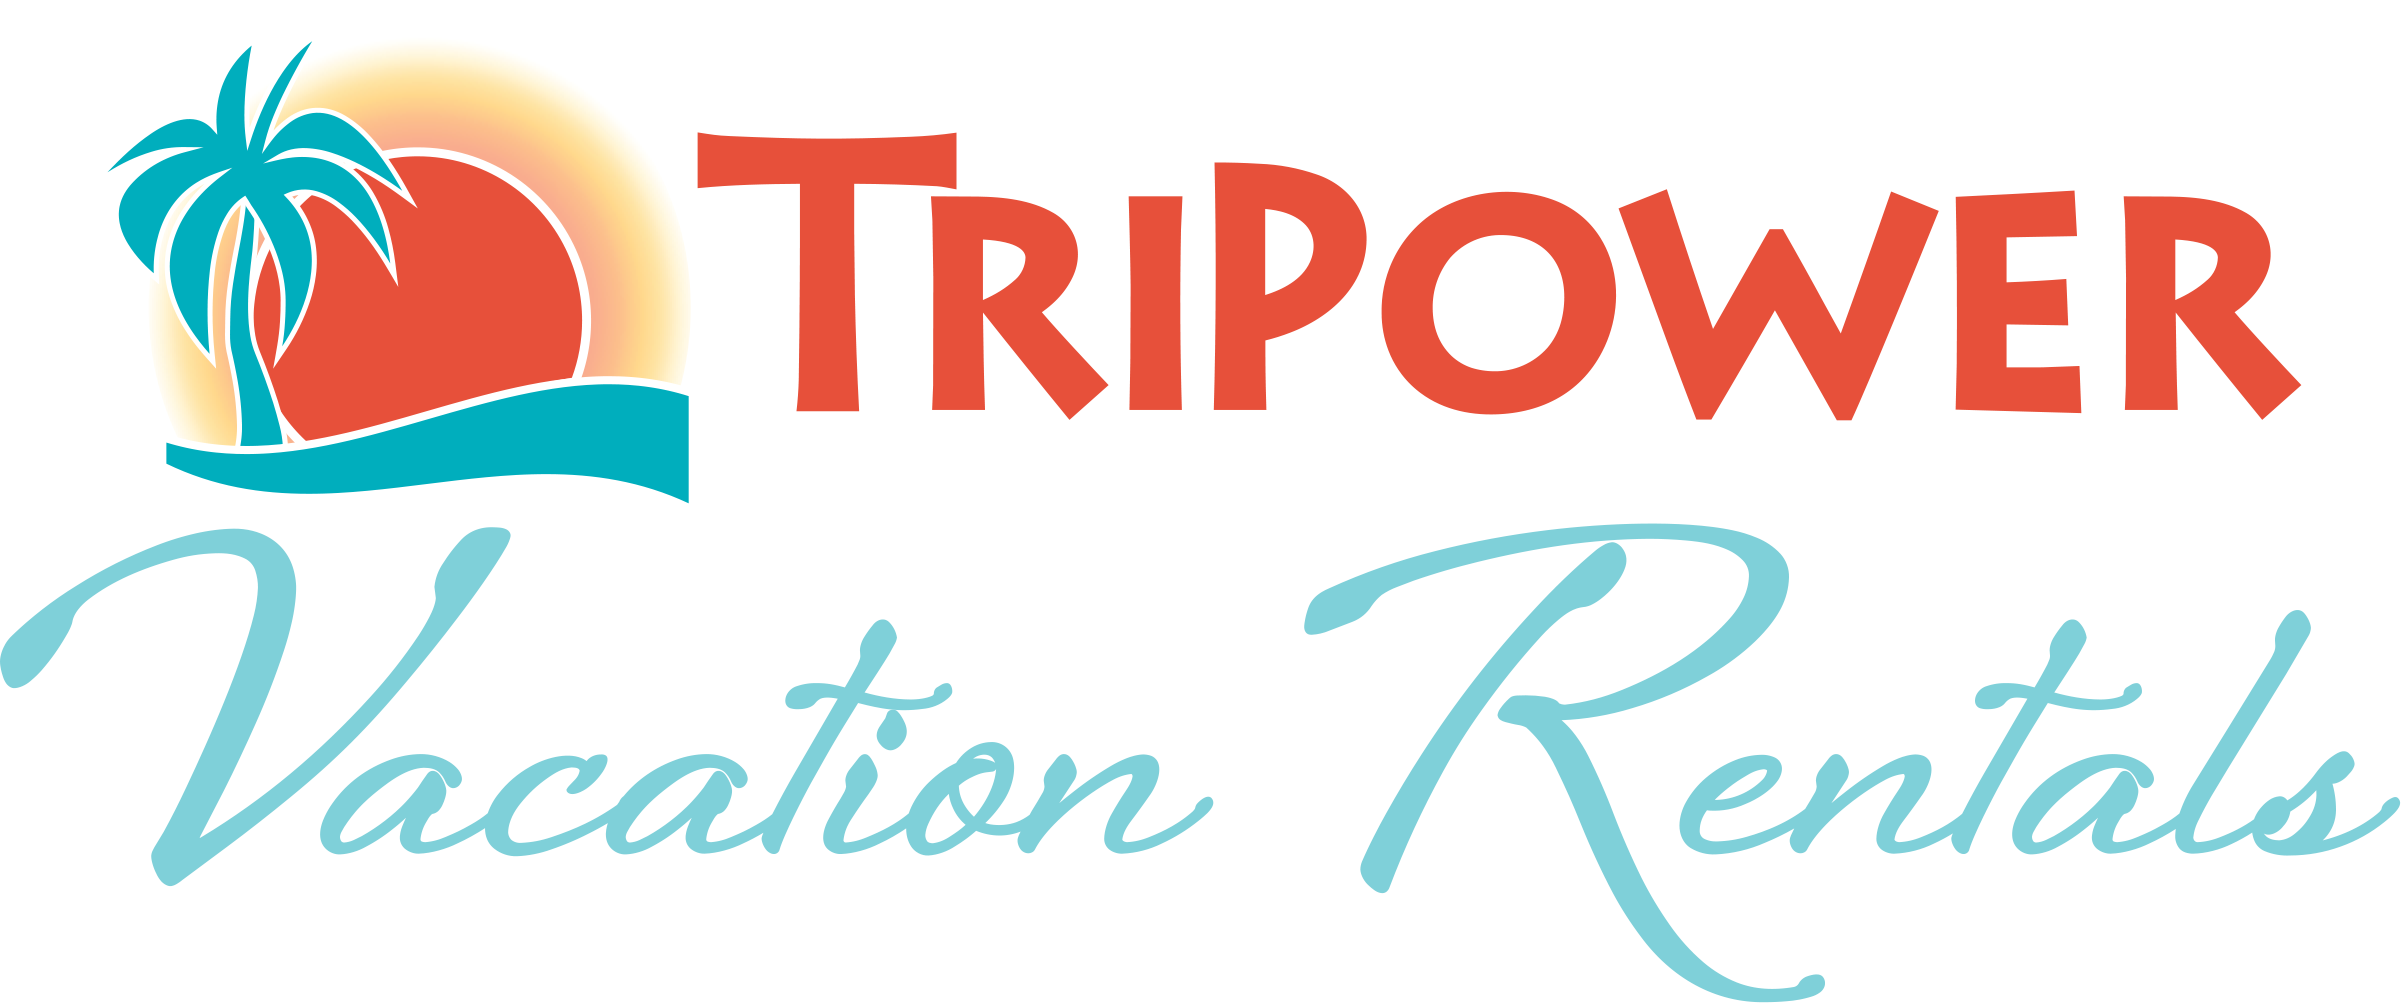 TriPower Vacation Rentals Logo